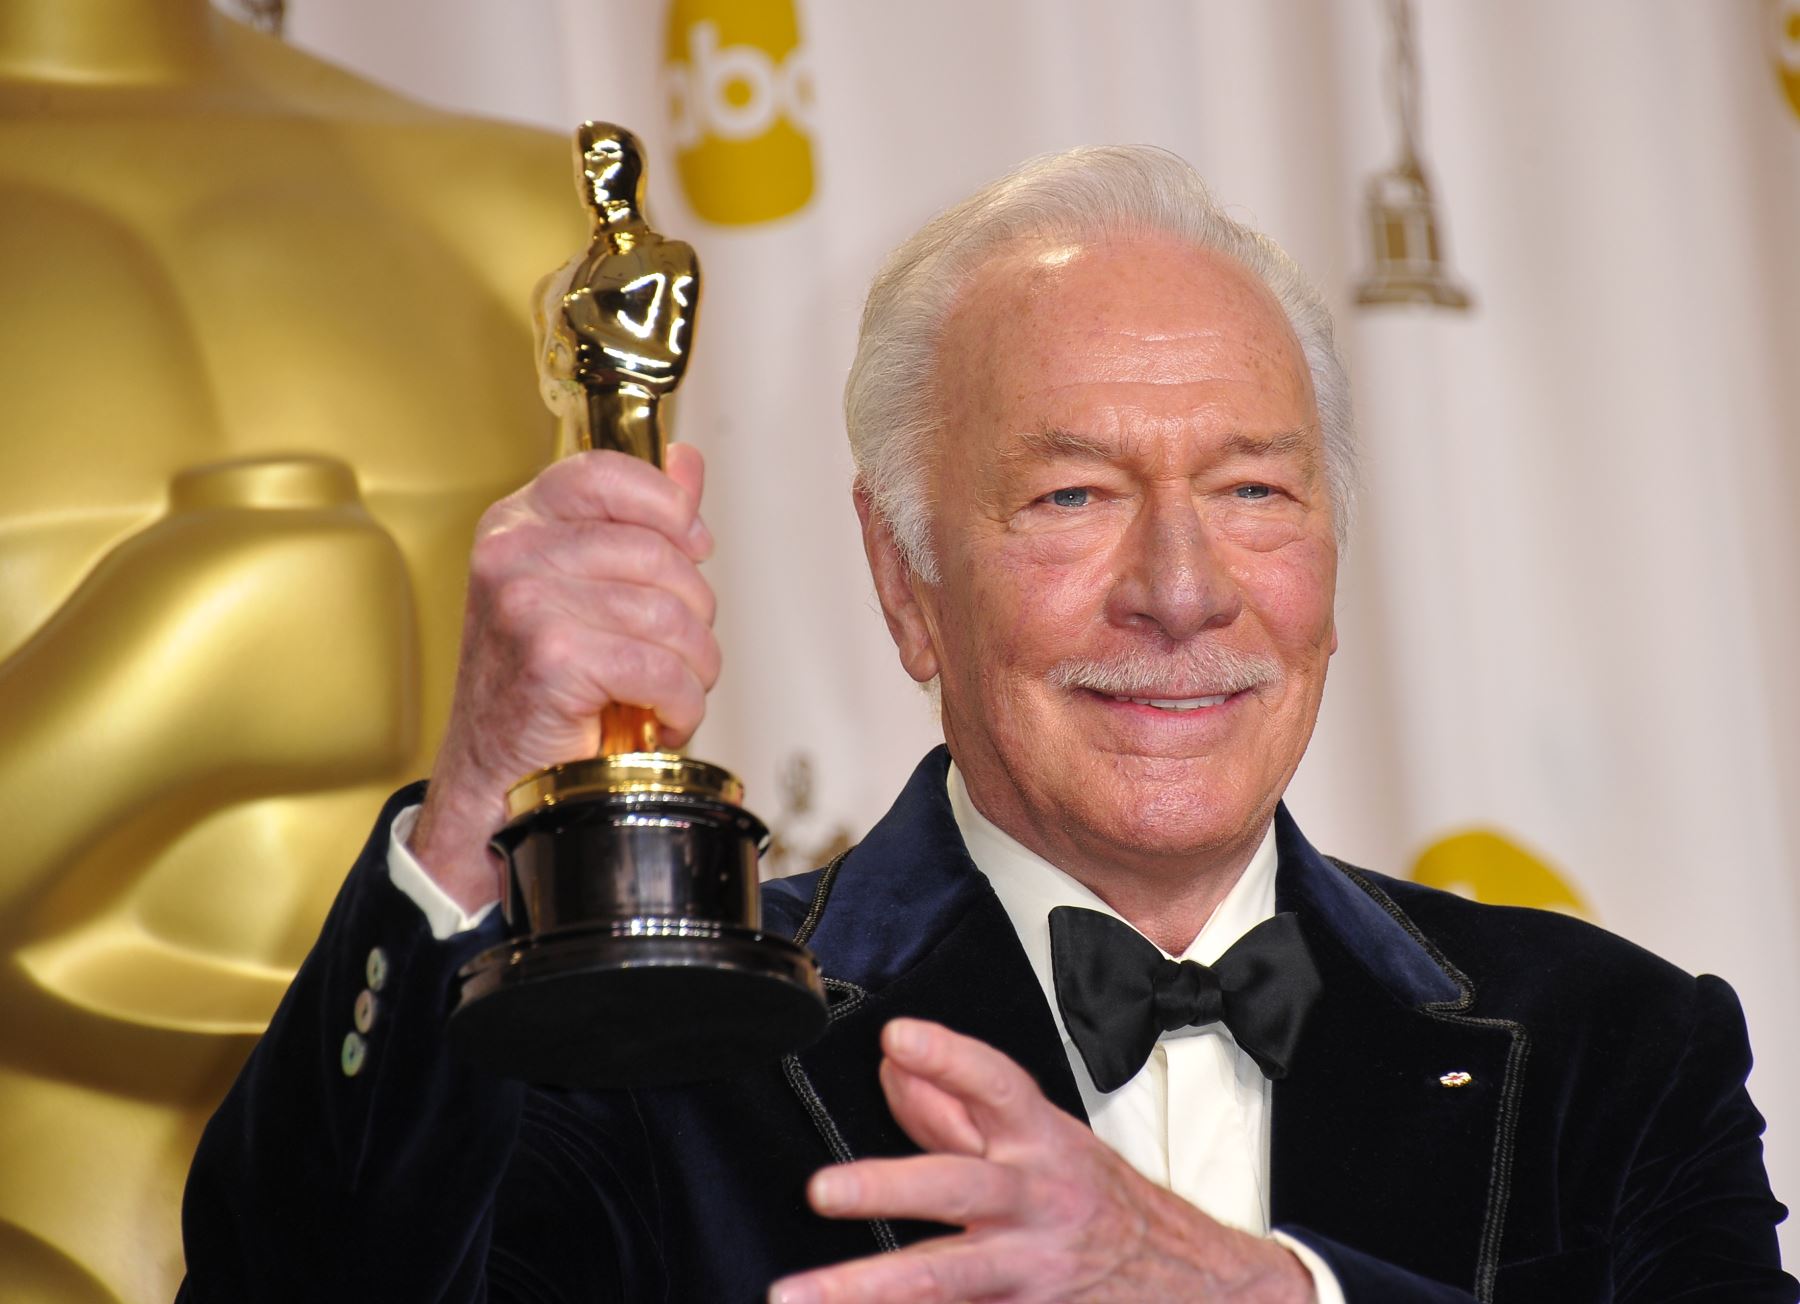 Plummer continuó trabajando hasta cumplir los 90 años, con 82 años se convirtió en el galardonado más longevo en llevarse un Óscar por su trabajo en "Beginner" (2012). Foto: AFP.